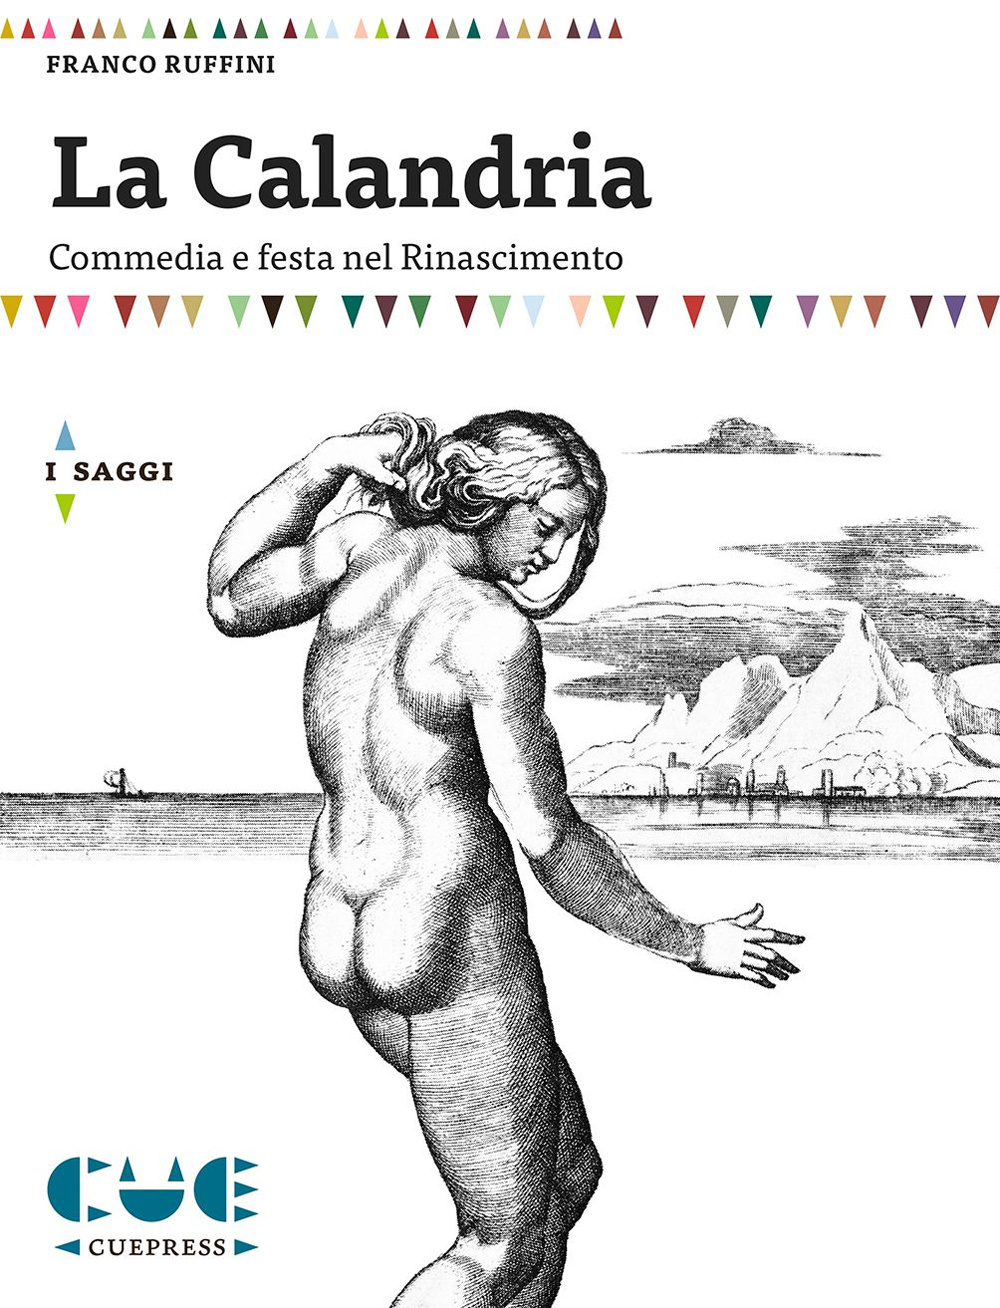 Libri Franco Ruffini - La Calandria. Commedia E Festa Nel Rinascimento NUOVO SIGILLATO, EDIZIONE DEL 21/07/2015 SUBITO DISPONIBILE